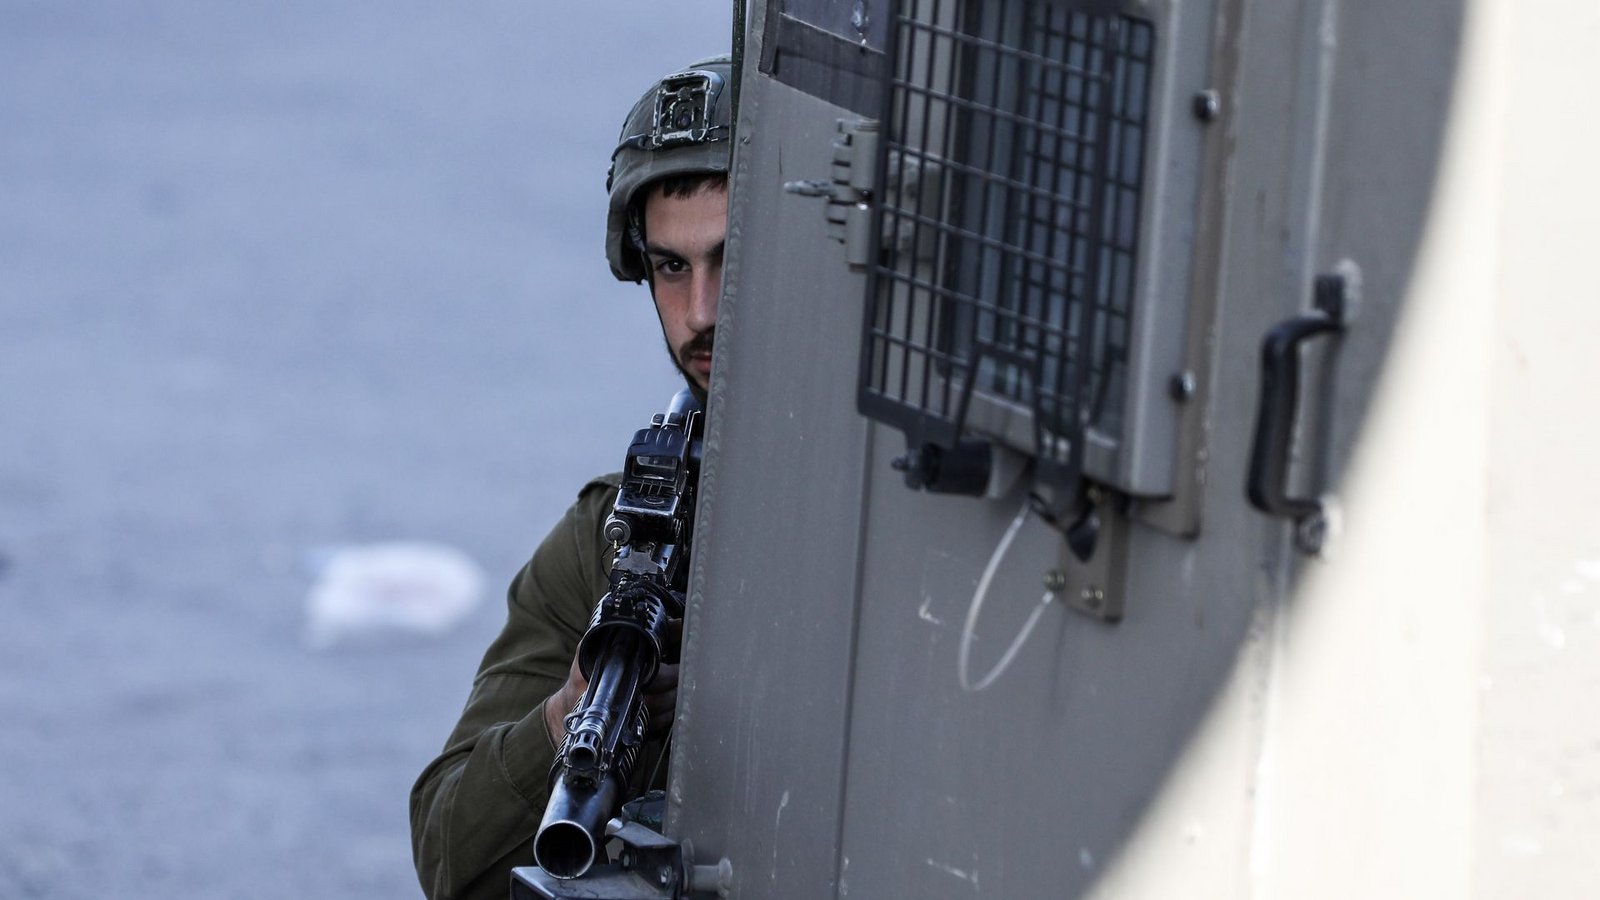 Ein israelischer Soldat im Einsatz im Westjordanland. (Symbolbild)Foto: Ayman Nobani/dpa